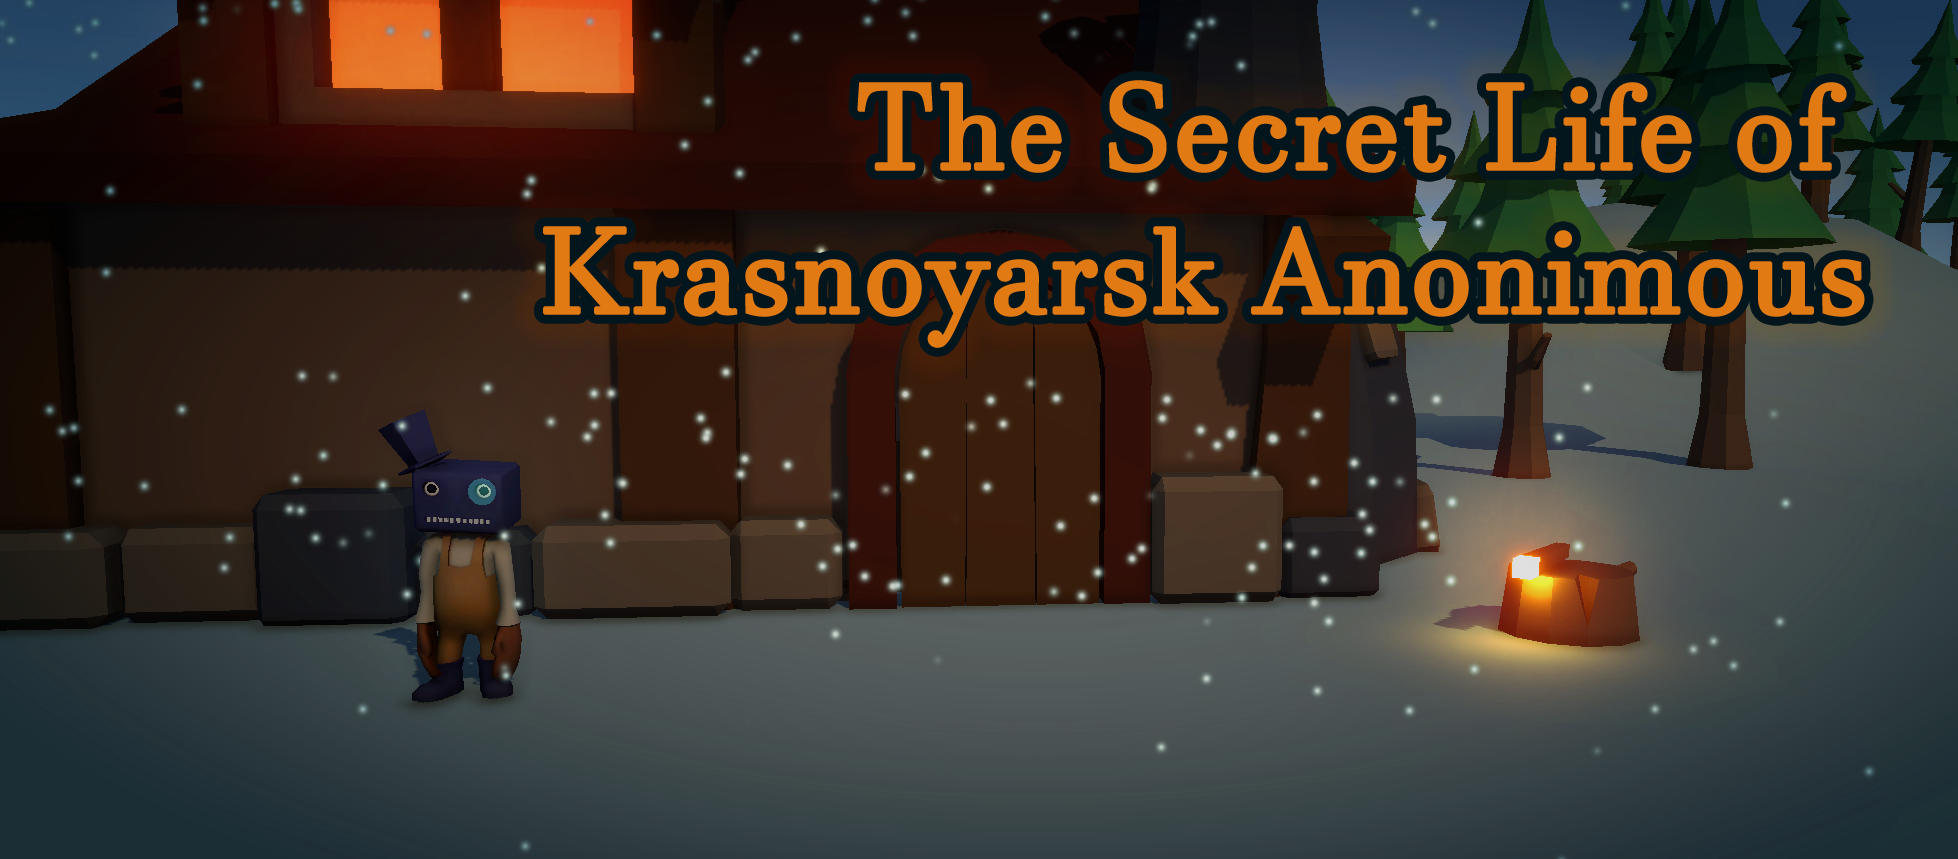 The Secret Life of Krasnoyarsk Anonimous